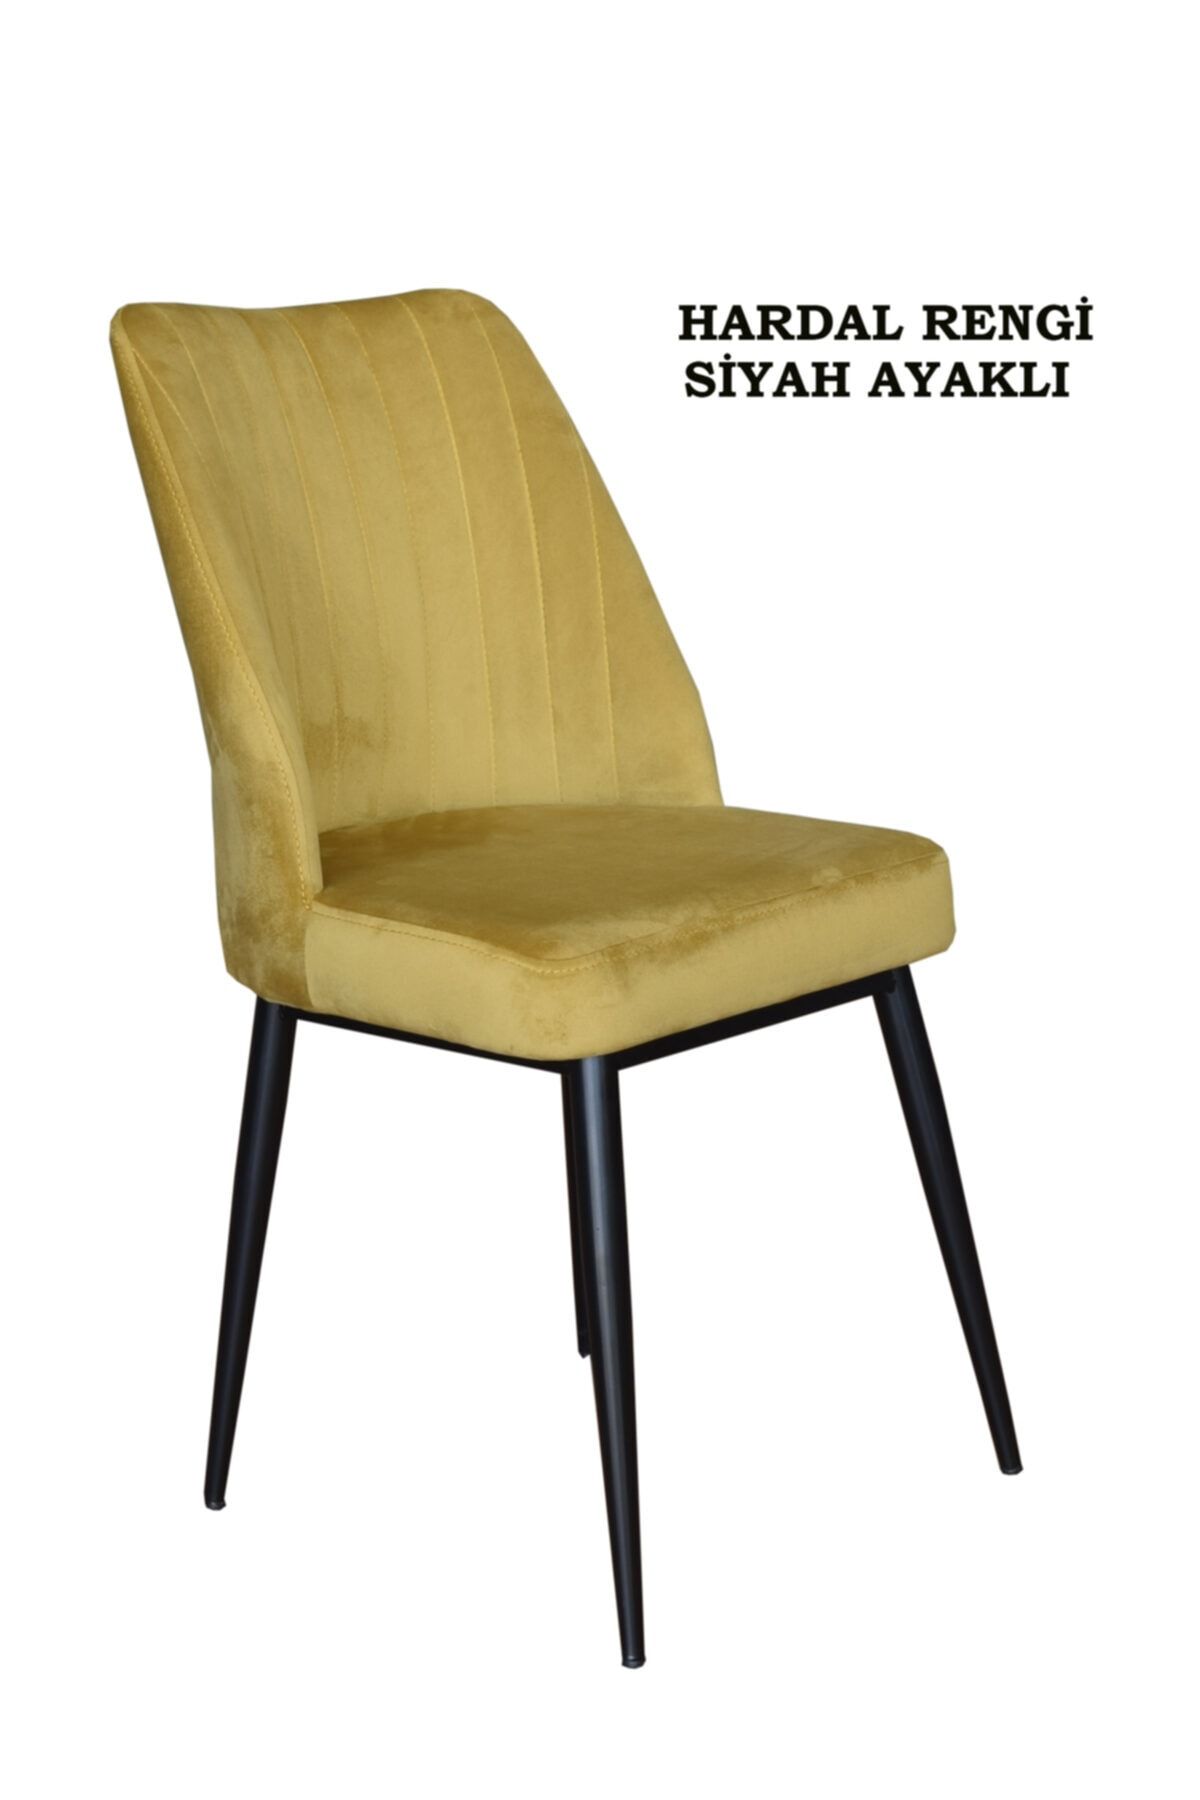 Ankhira Elit Sandalye, Mutfak Ve Salon Sandalyesi, Silinebilir Hardal Renk Kumaş,siyah Ayaklı